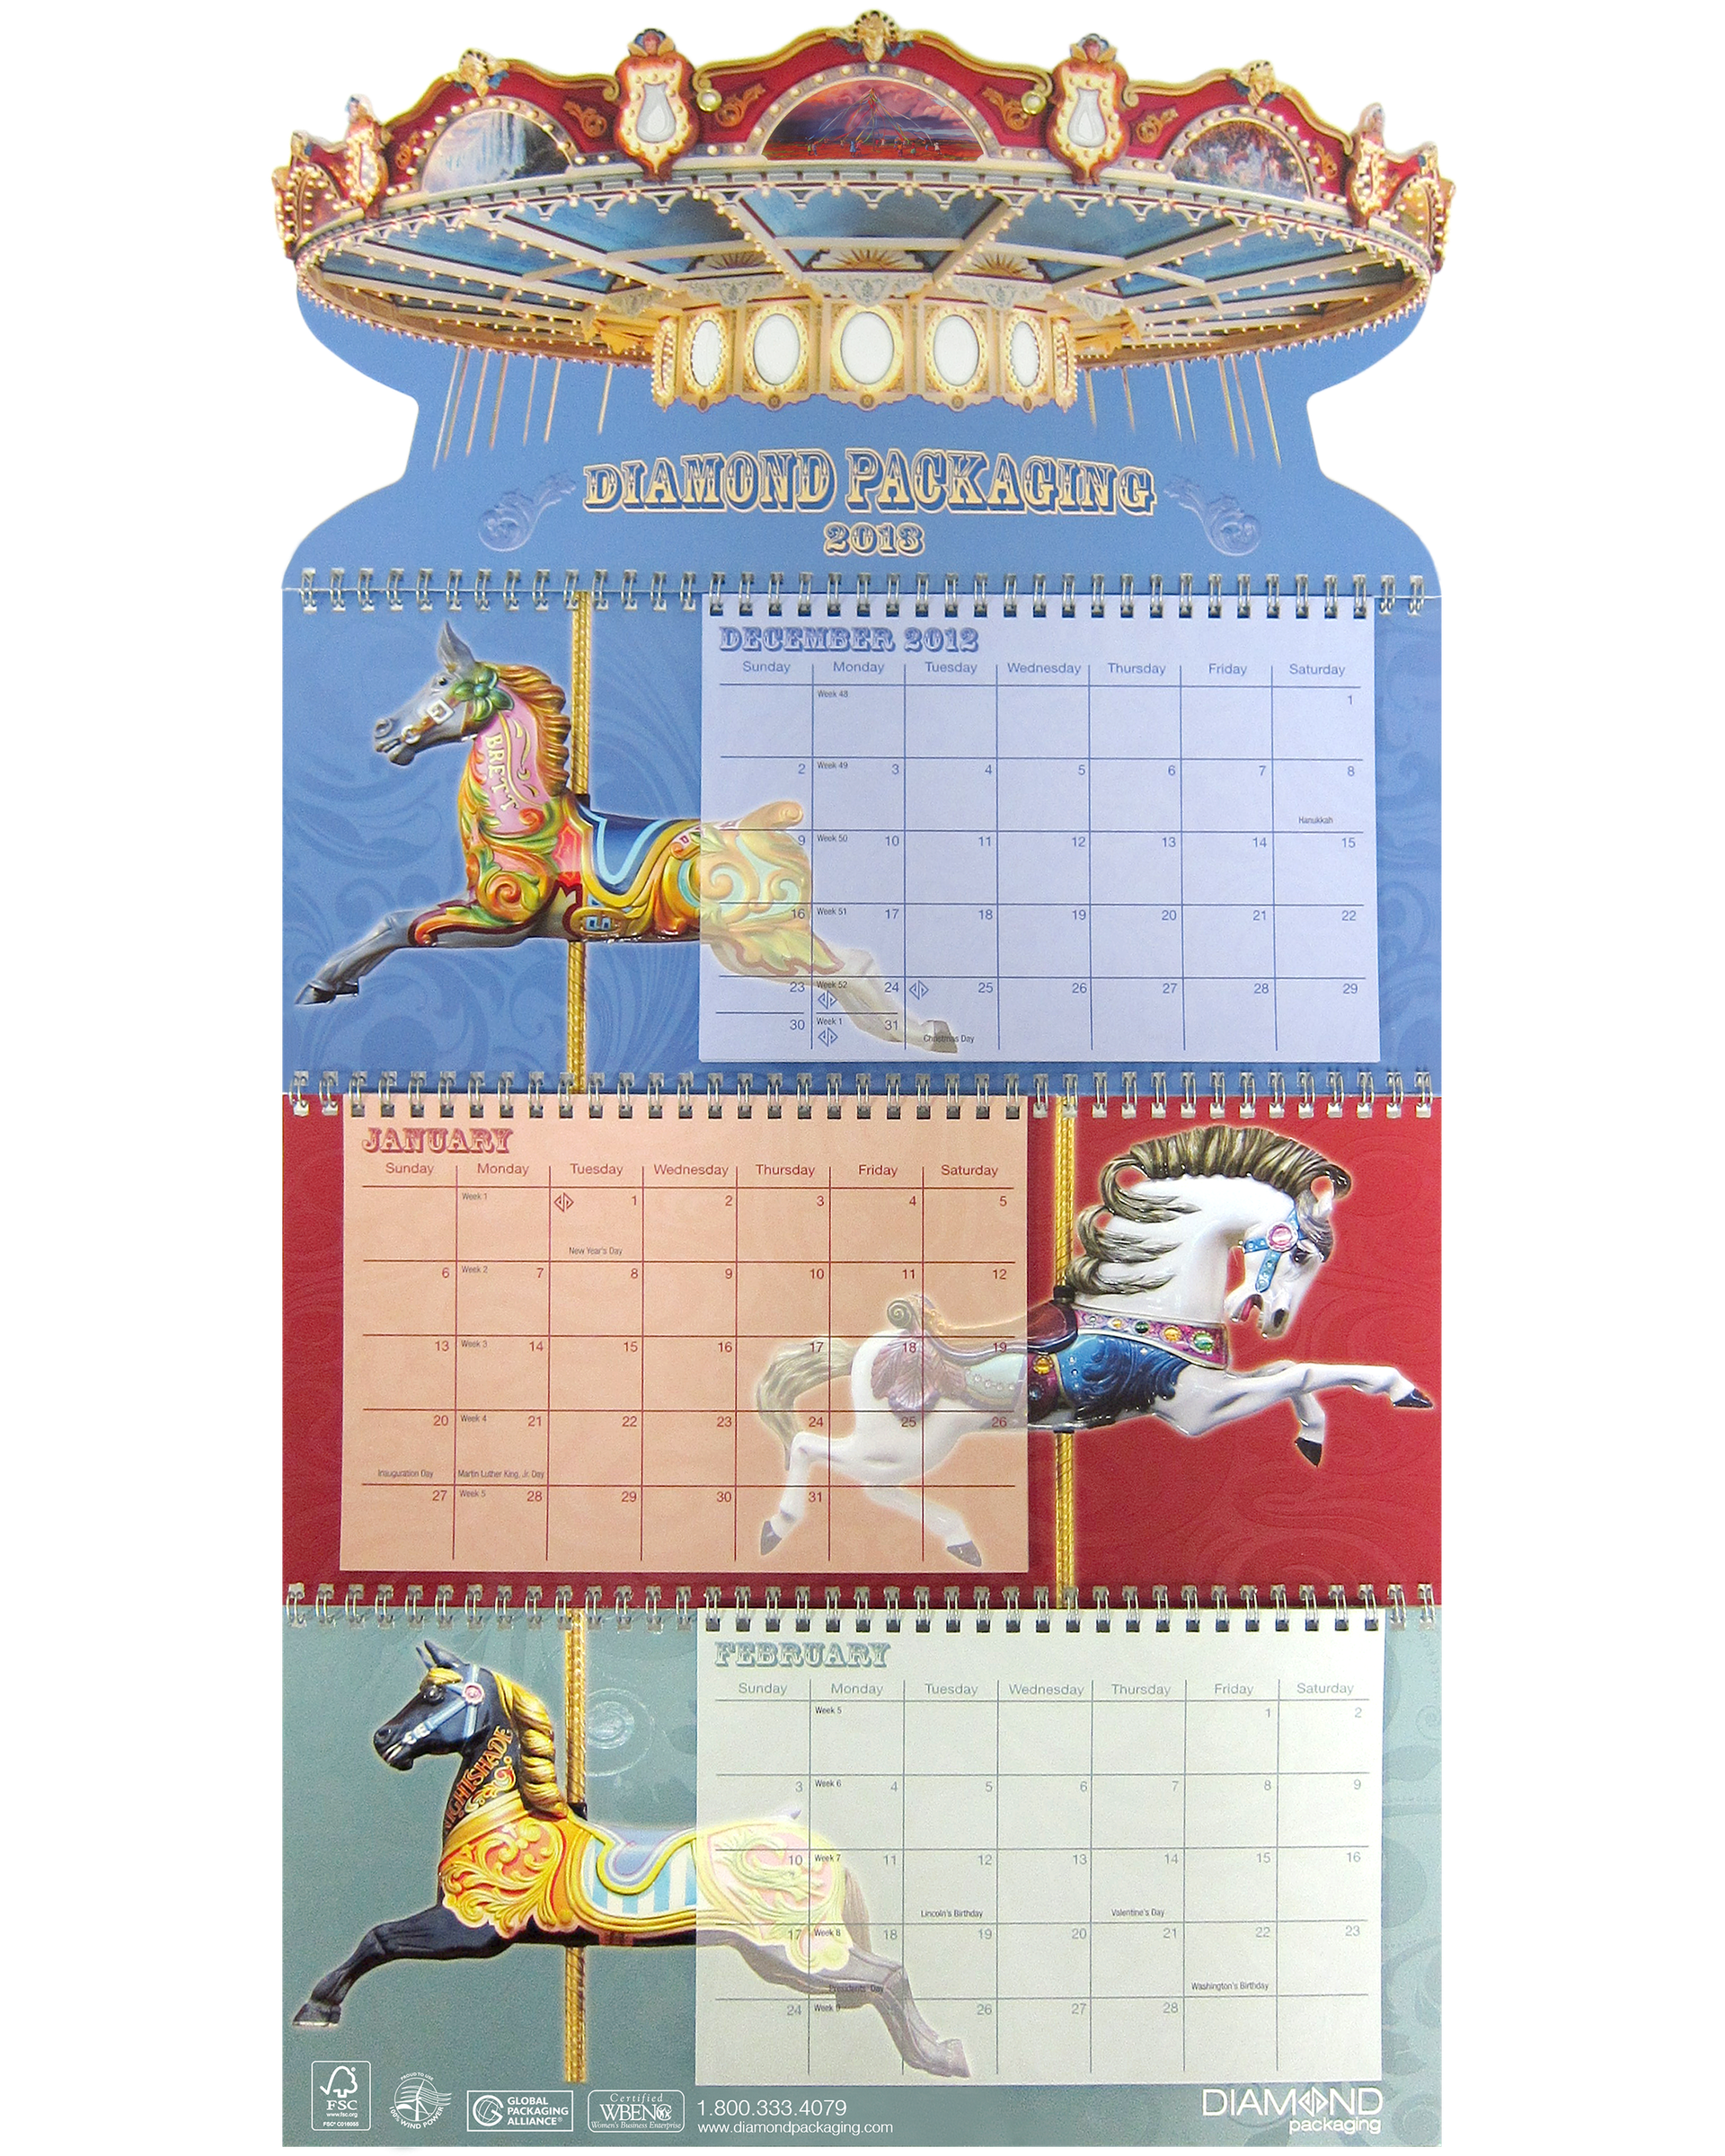 Diamond Packaging 2013 Calendar